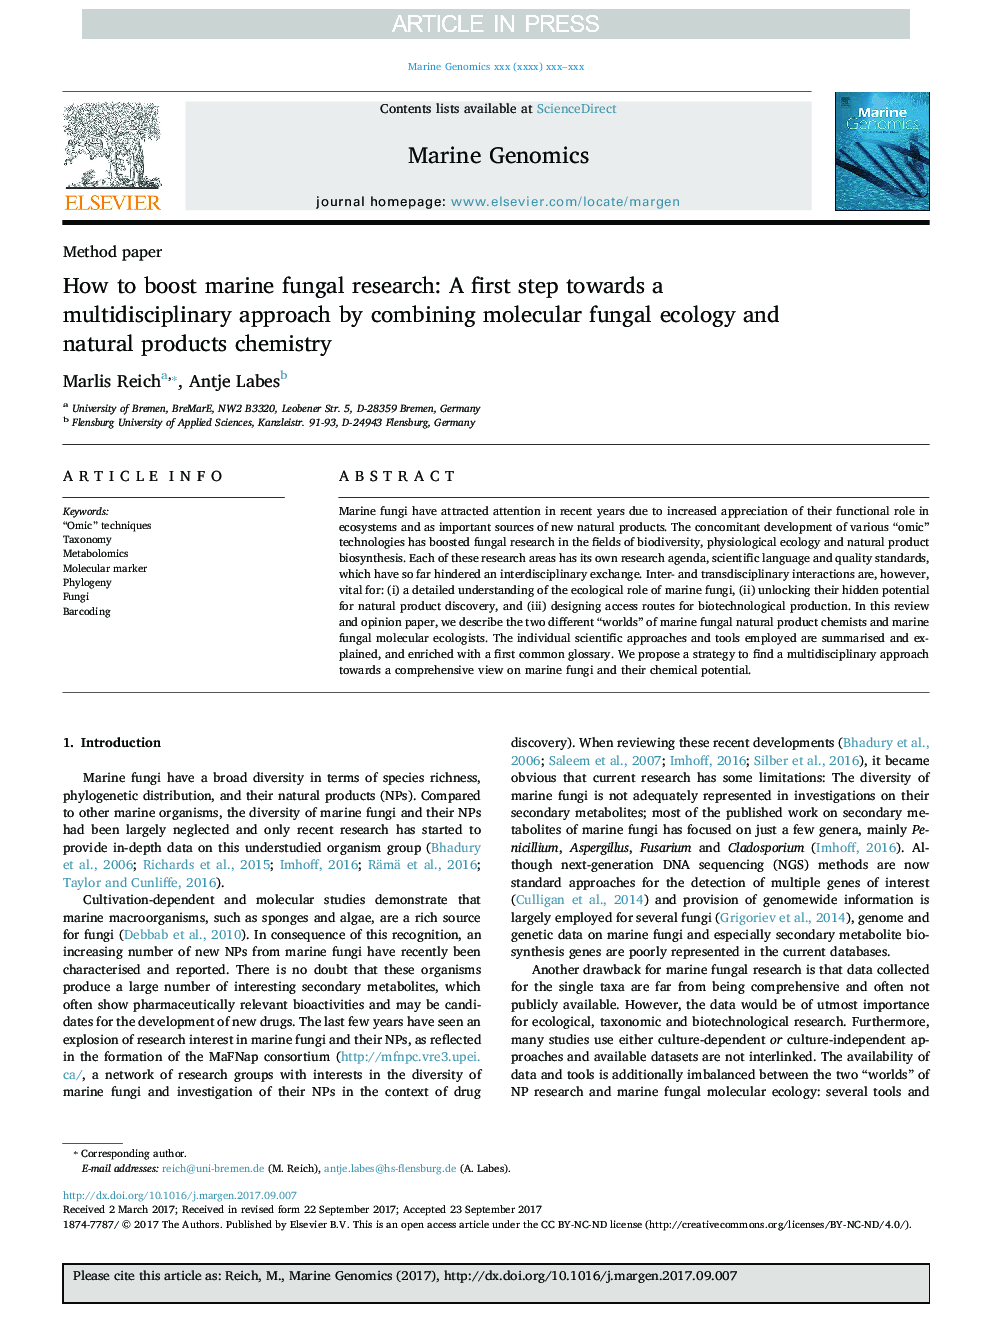 چگونگی تقویت تحقیقات قارچی دریایی: اولین قدم به سمت رویکرد چند رشته ای با ترکیب محیط زیست قارچی مولکولی و شیمیایی طبیعی محصولات 